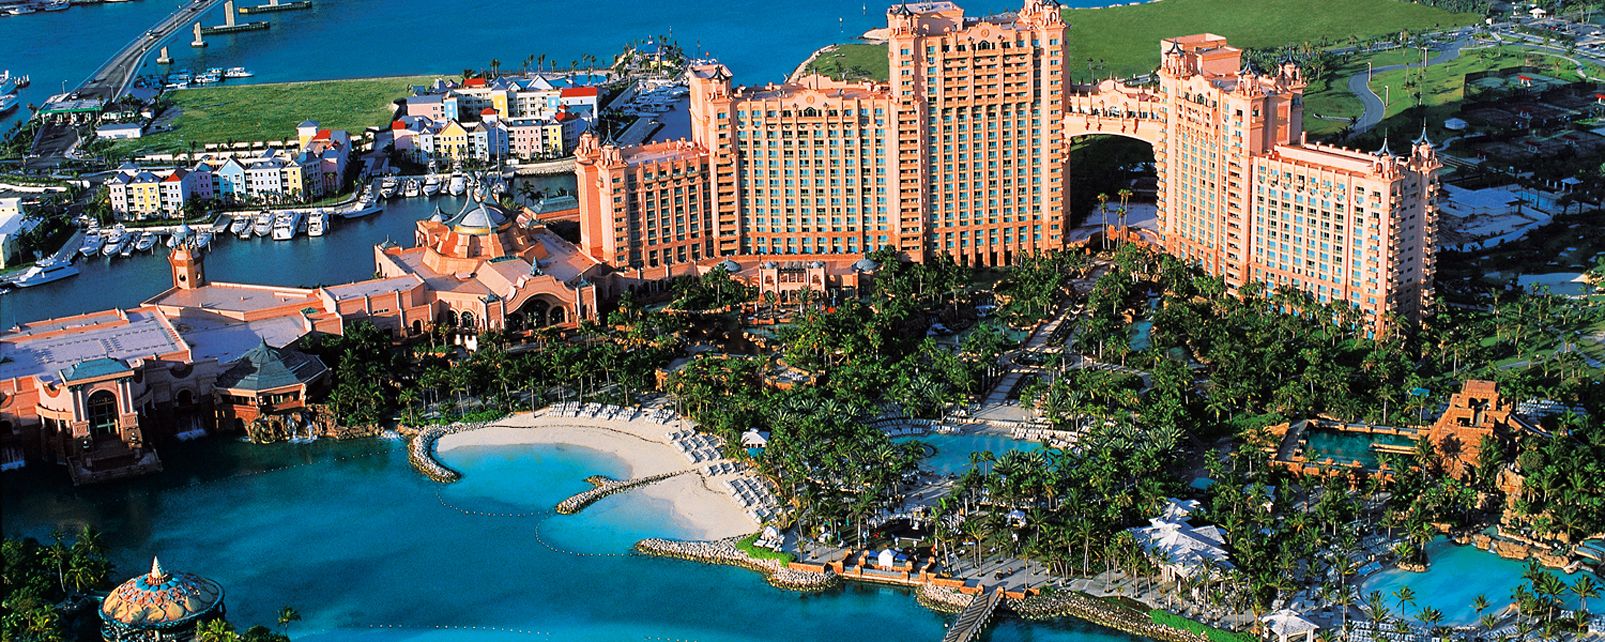 New Casino In The Bahamas